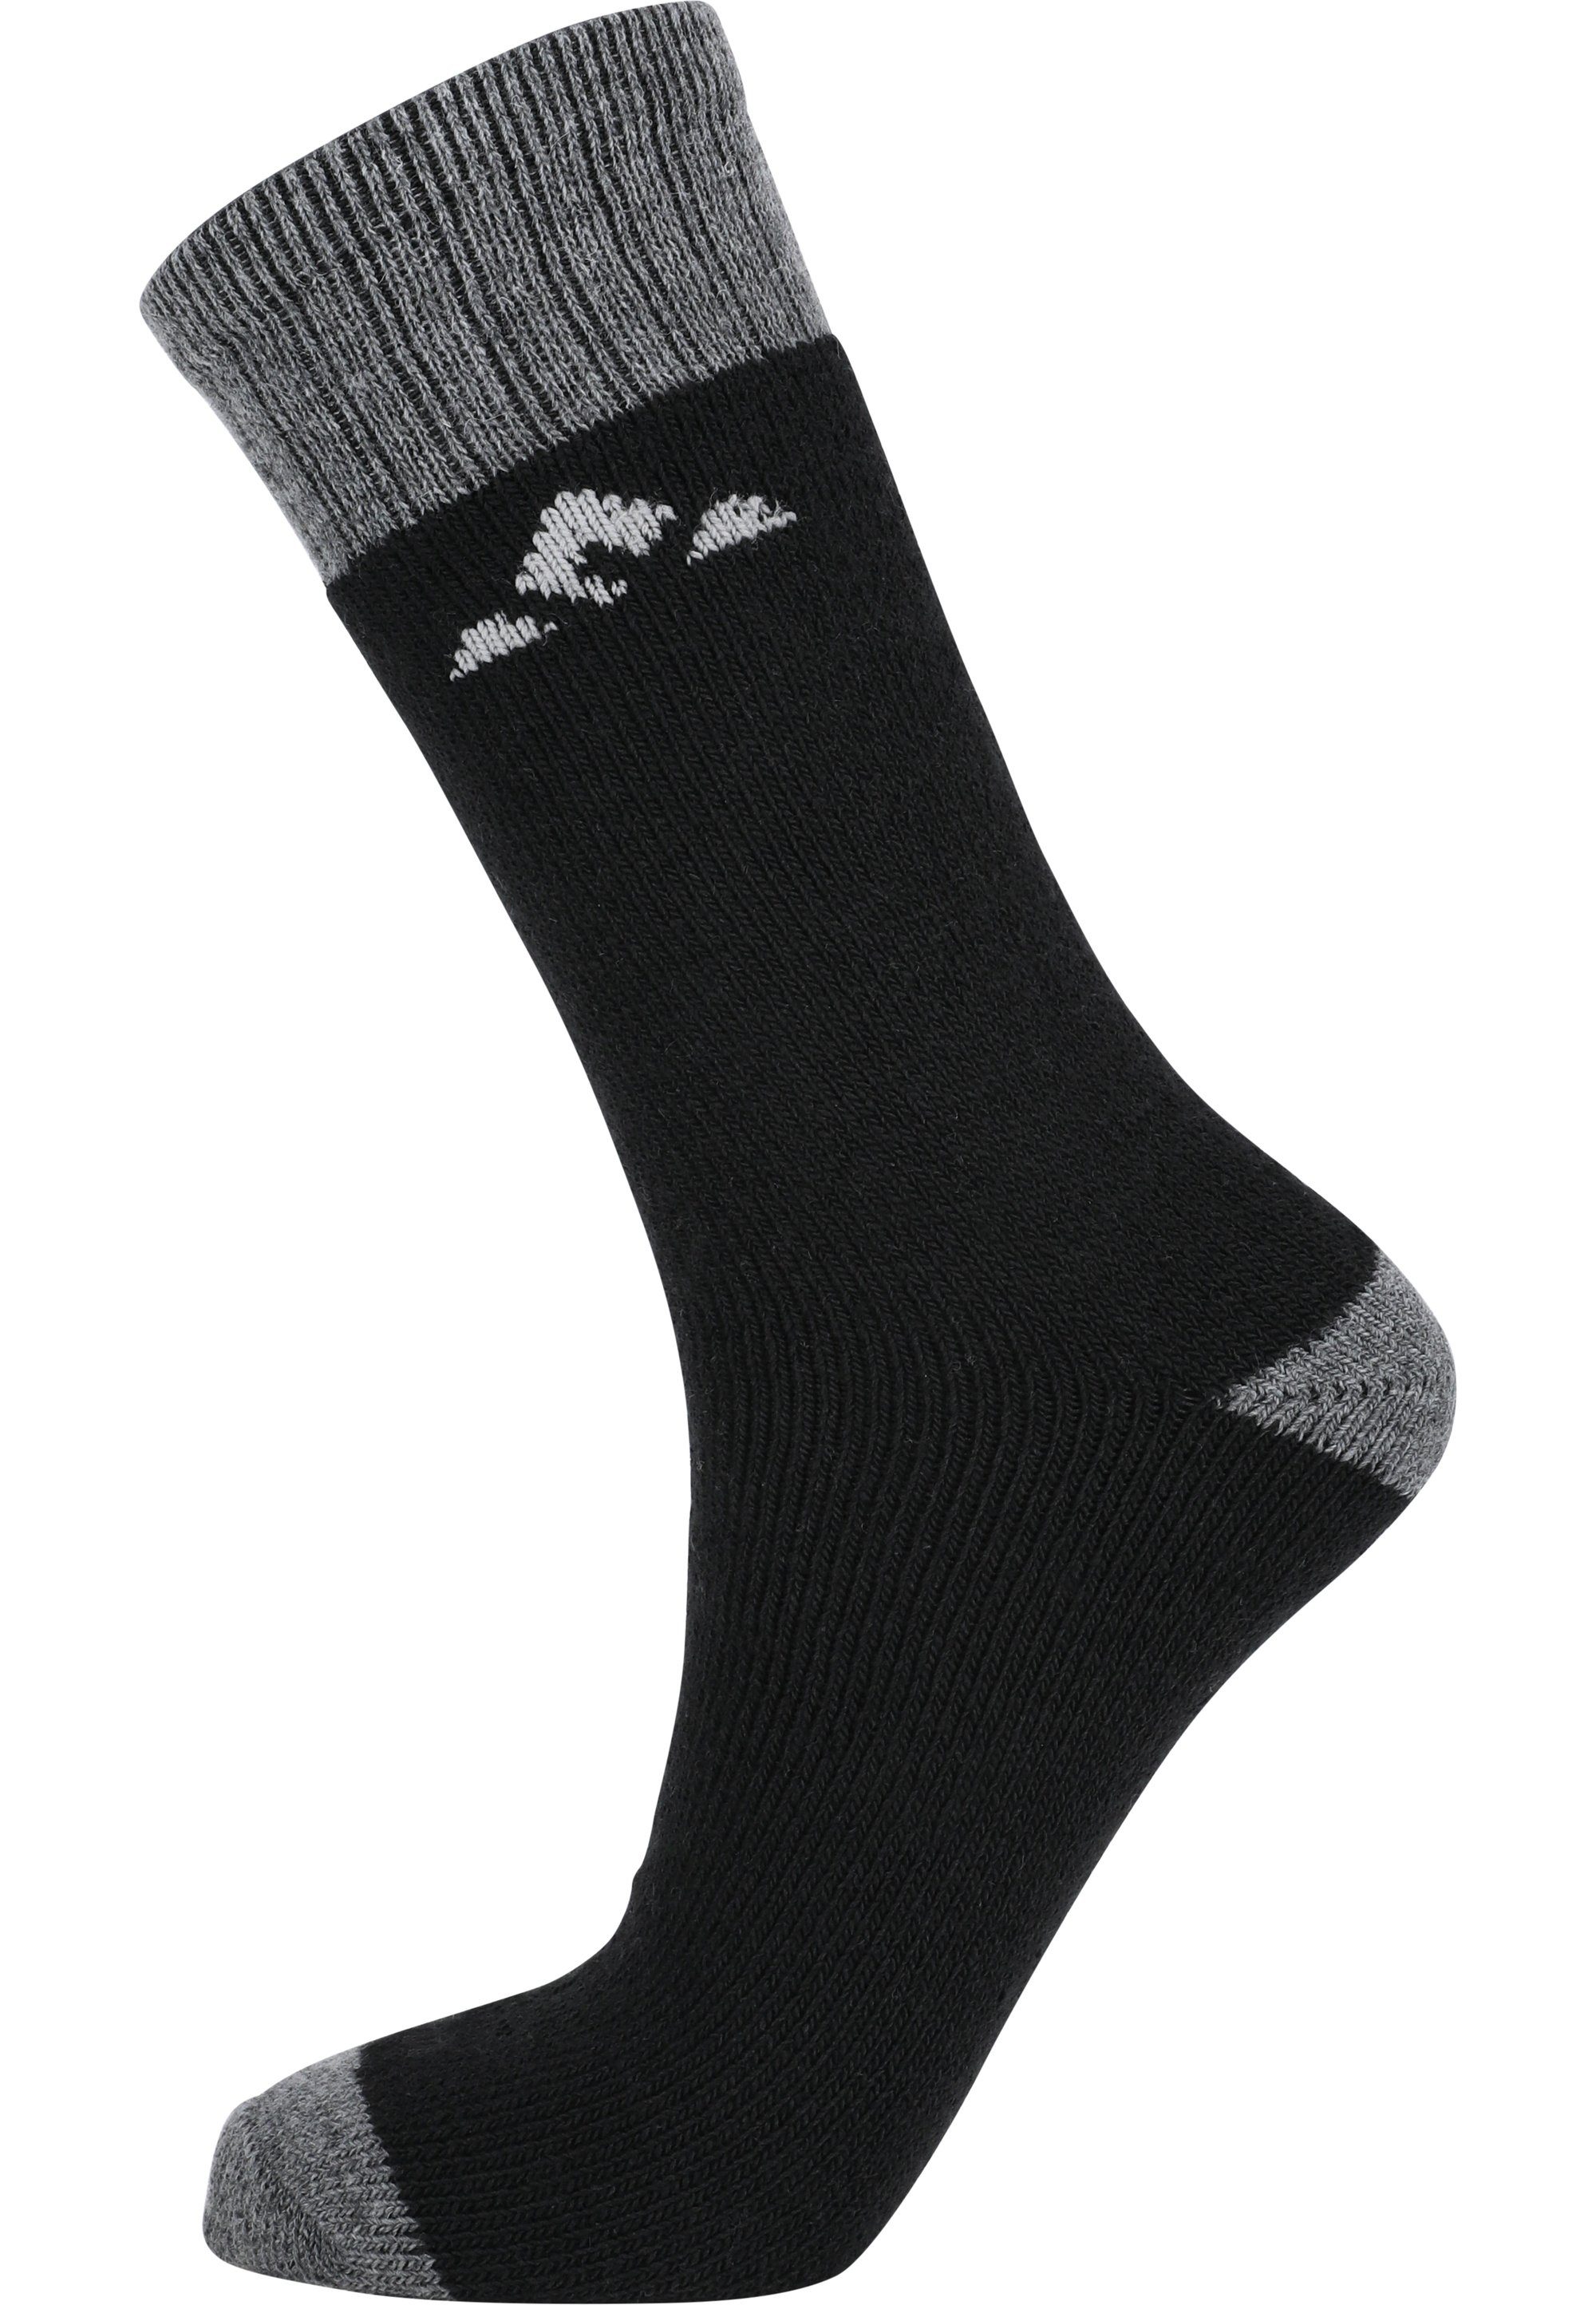 WHISTLER schwarz atmungsaktiver Funktion Socken mit Waverlou